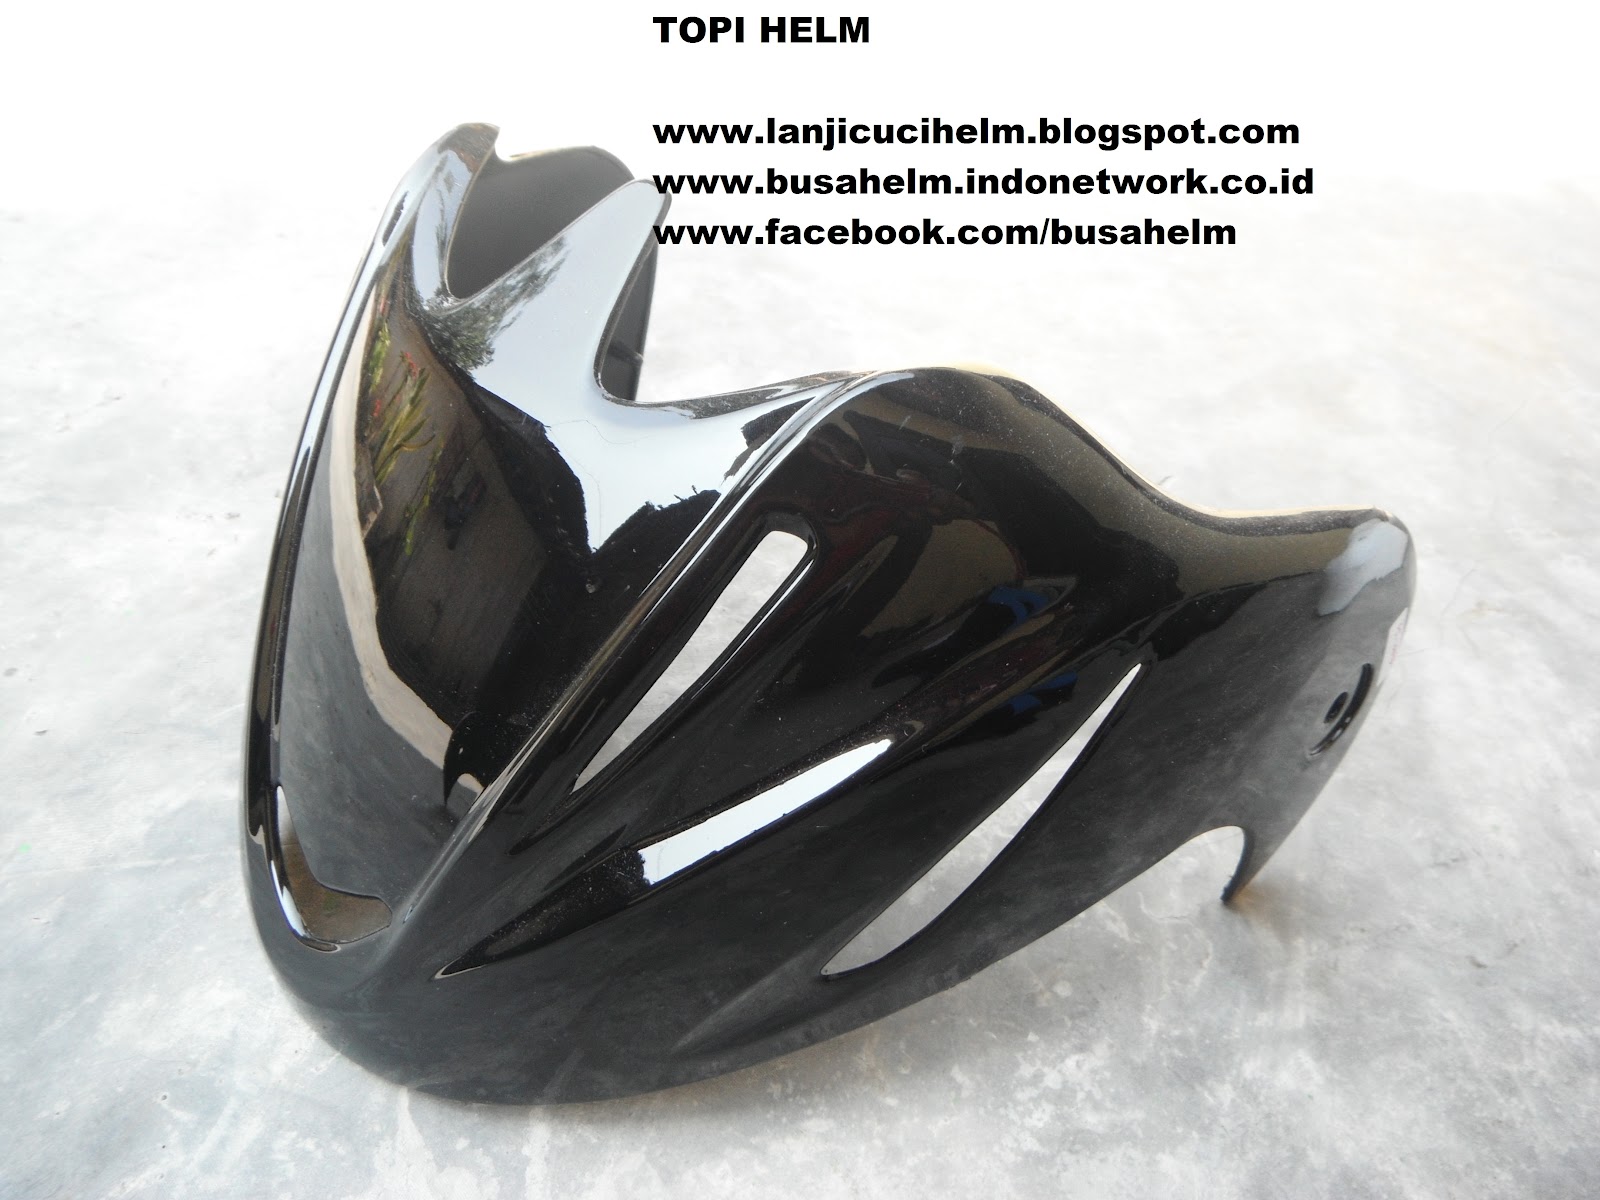 Pet Helm untuk INK CX-22, tersedia juga untuk helm cen-cen